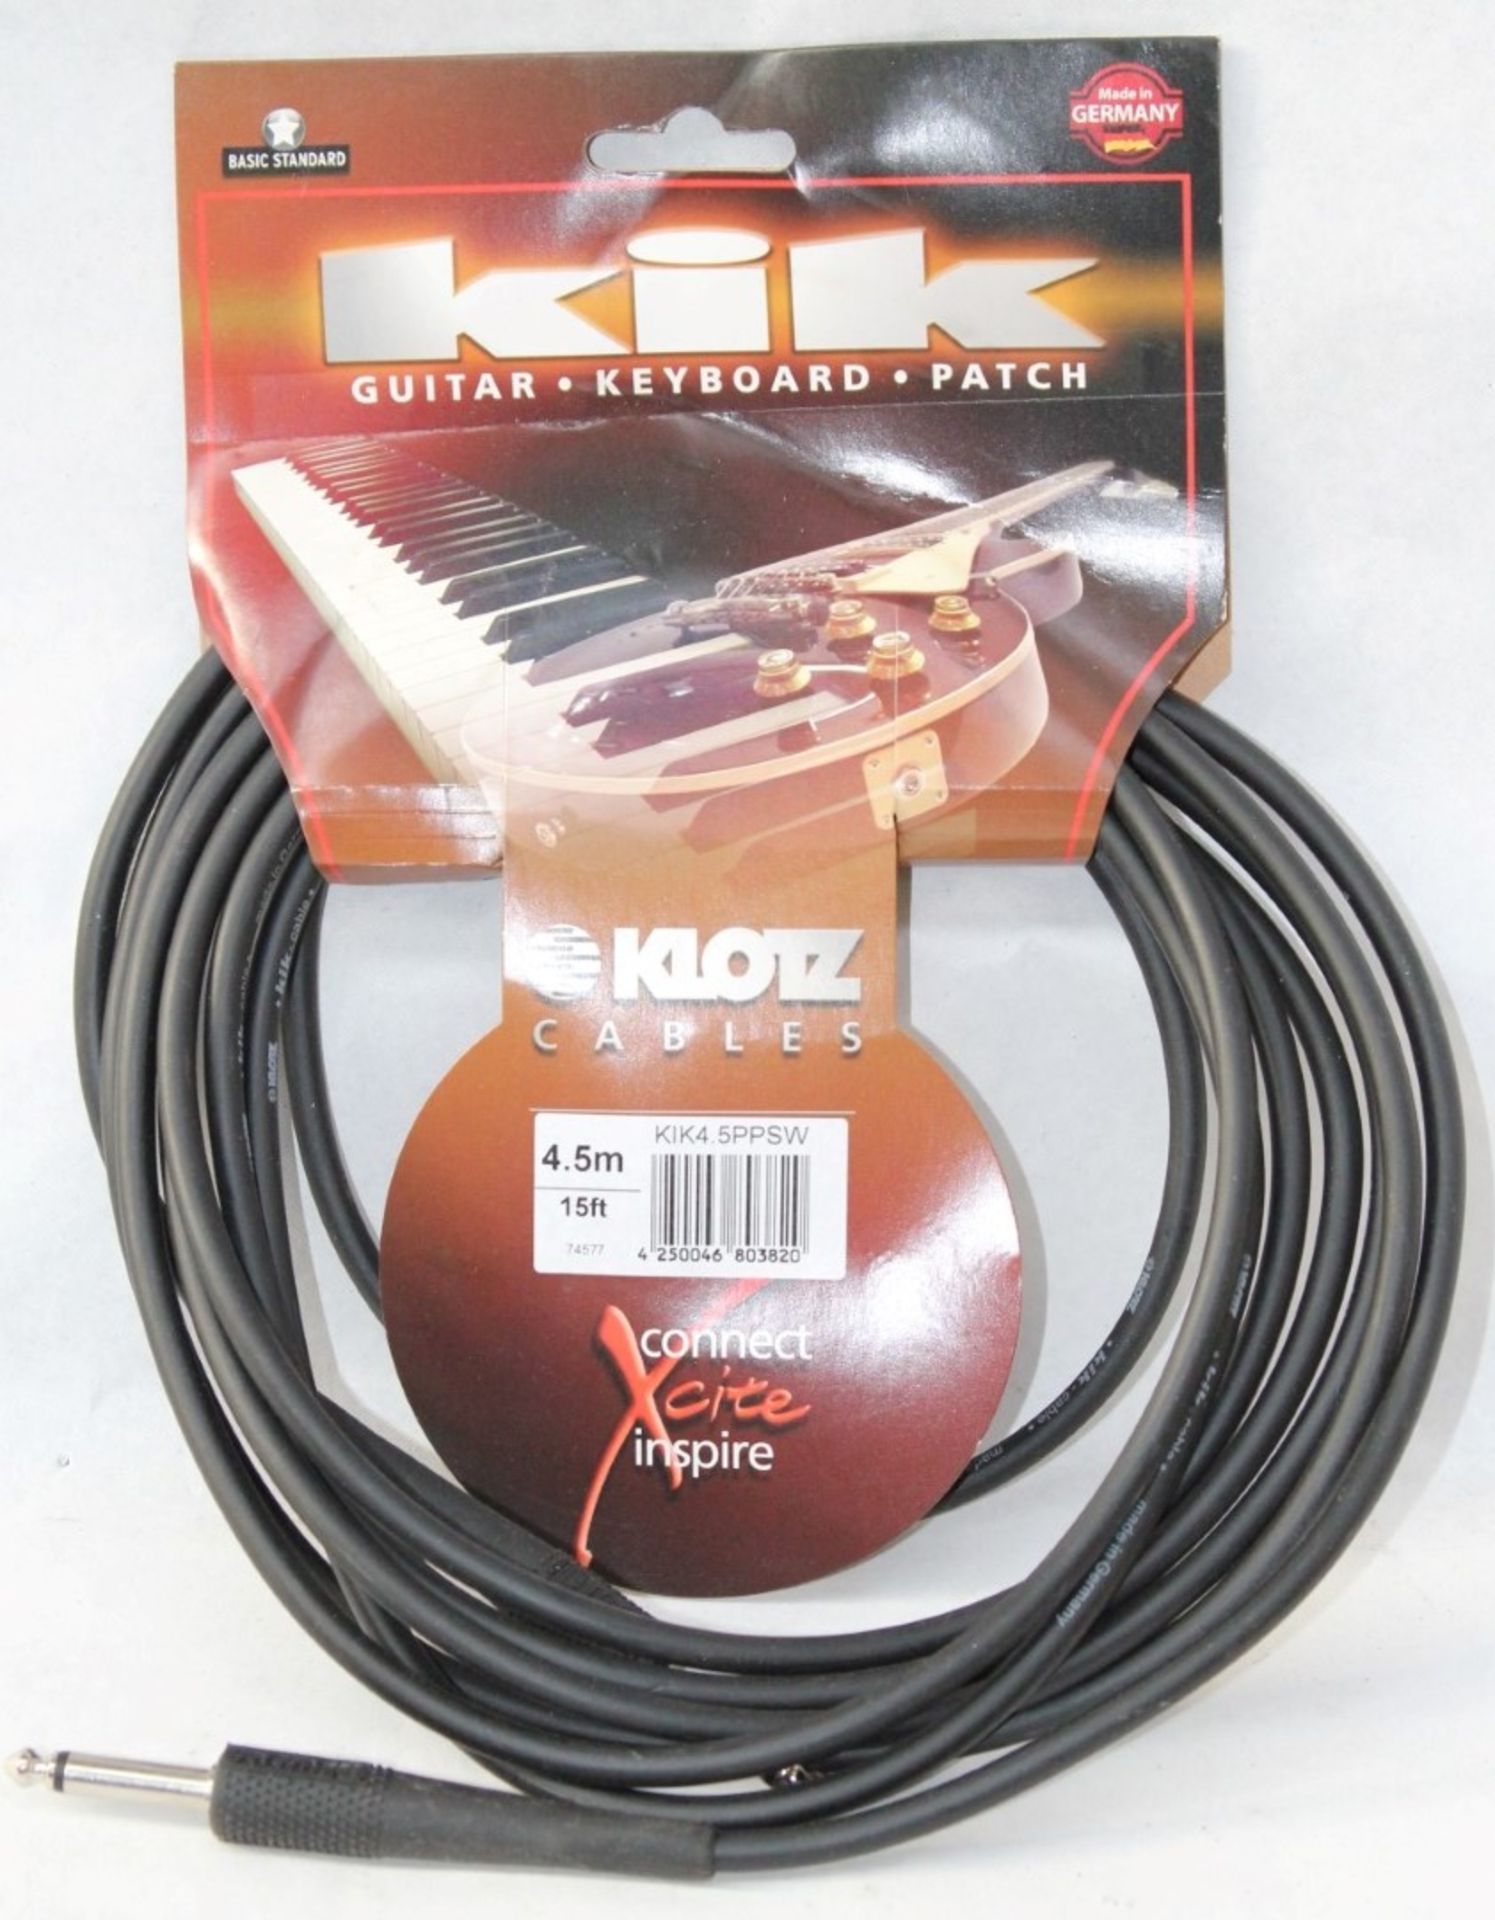 1 x Klotz KiK Guitar, Keyboard or Patch Lead - Jack to Jack - Product Code KIK4.5PPSW - Brand New